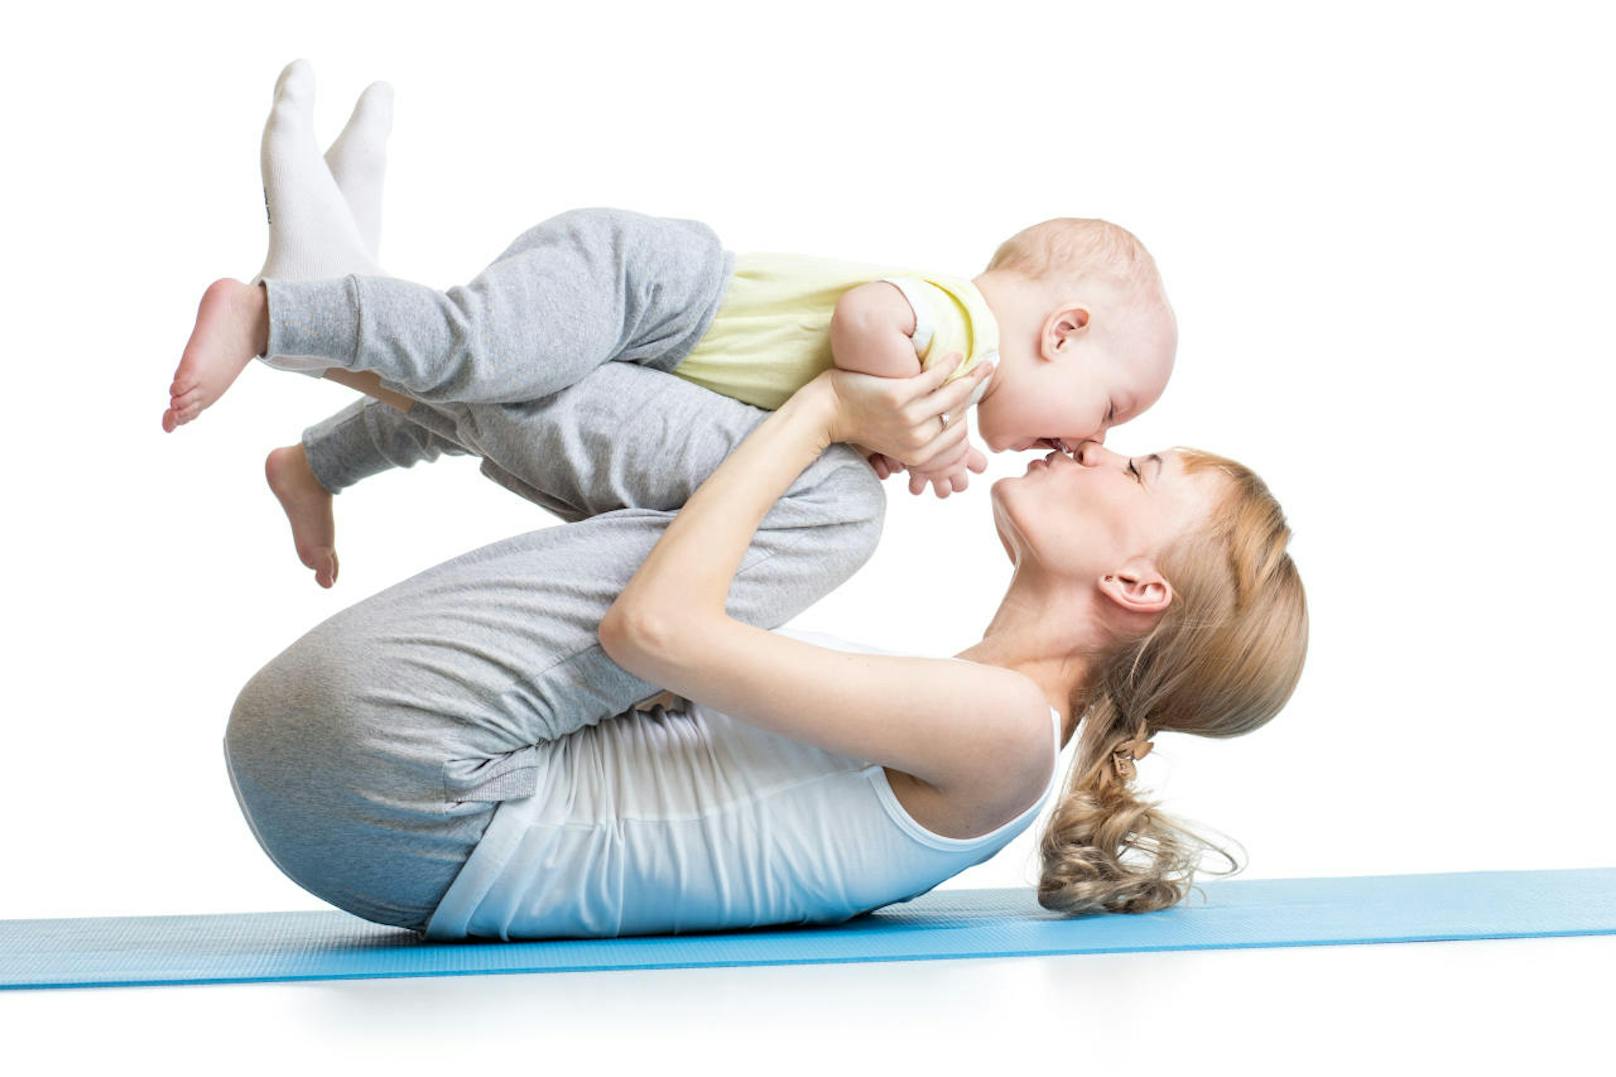 Rückbildungsgymnastik und Bewegung nach der Geburt sind wichtig. Wir verraten, auf welche Sportarten sie erst einmal verzichten sollten: